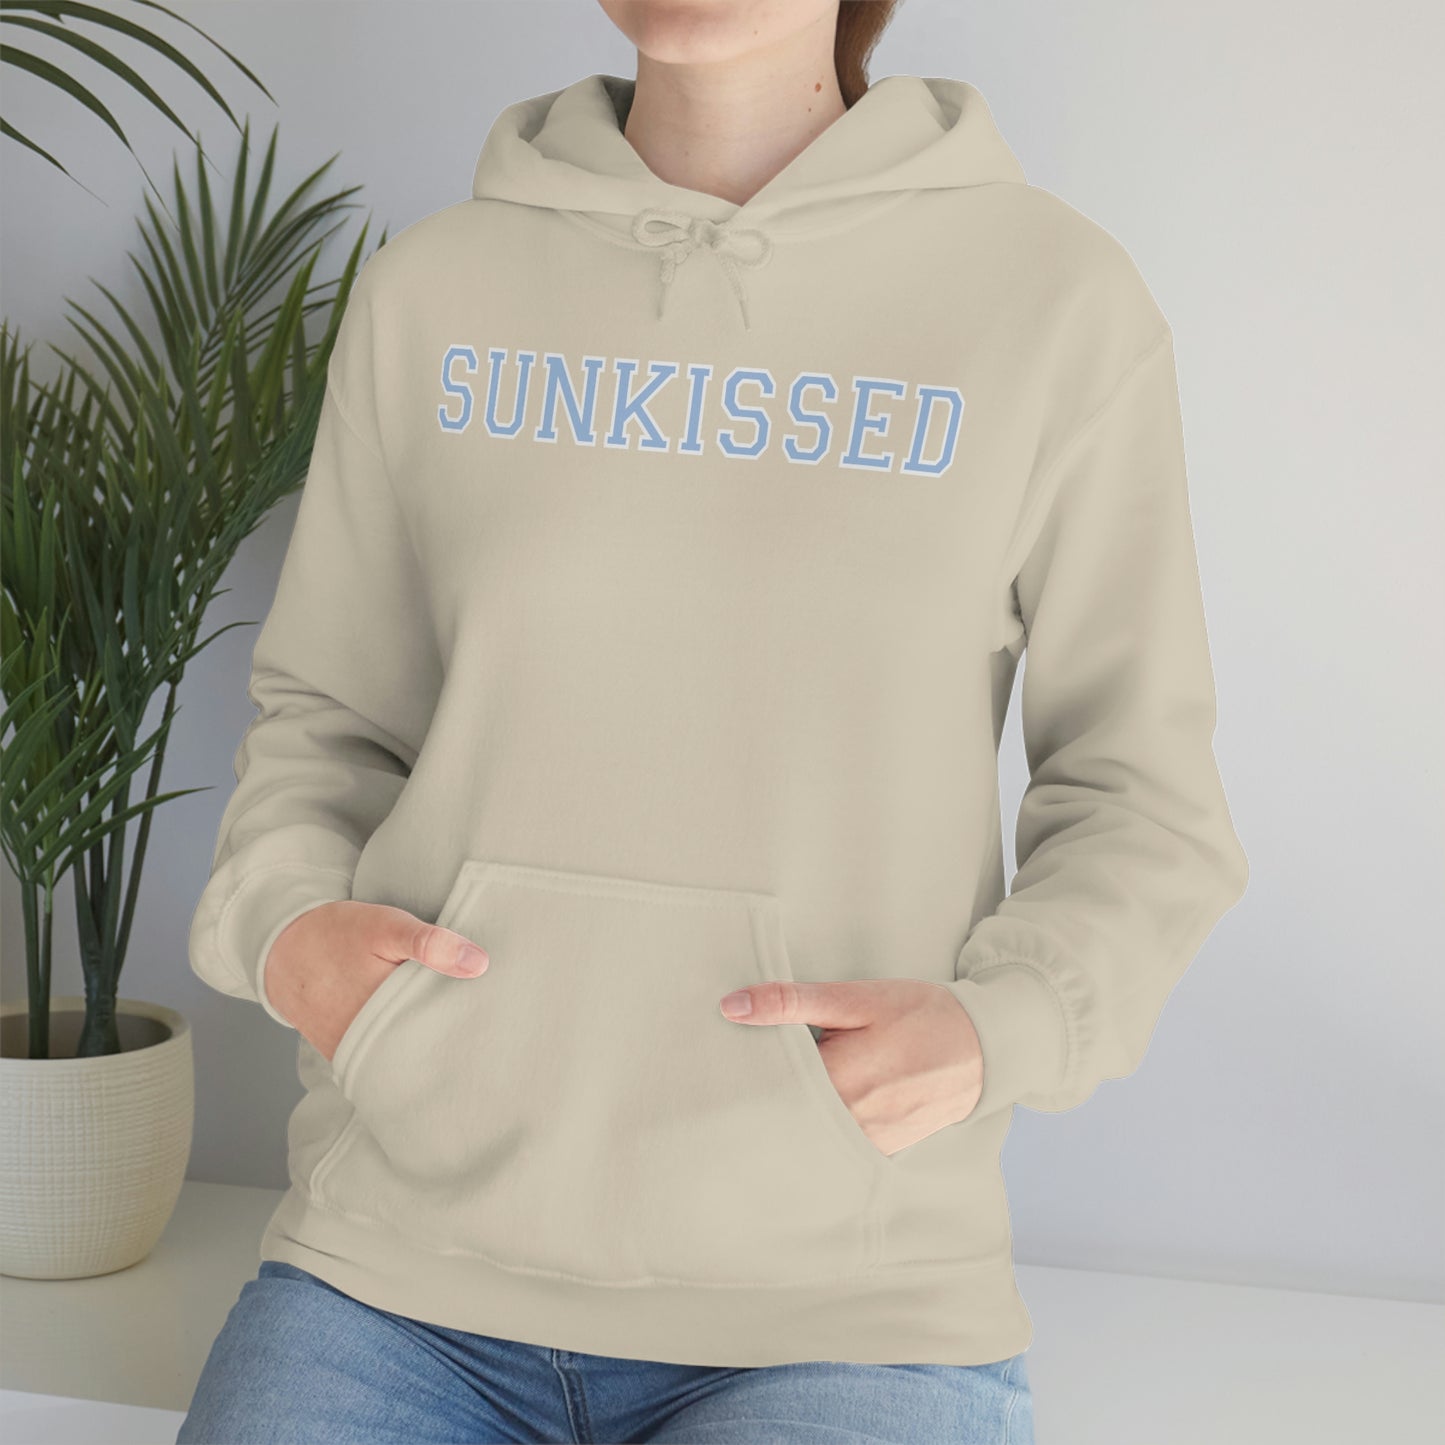 Sunkissed Hooded Sweatshirt